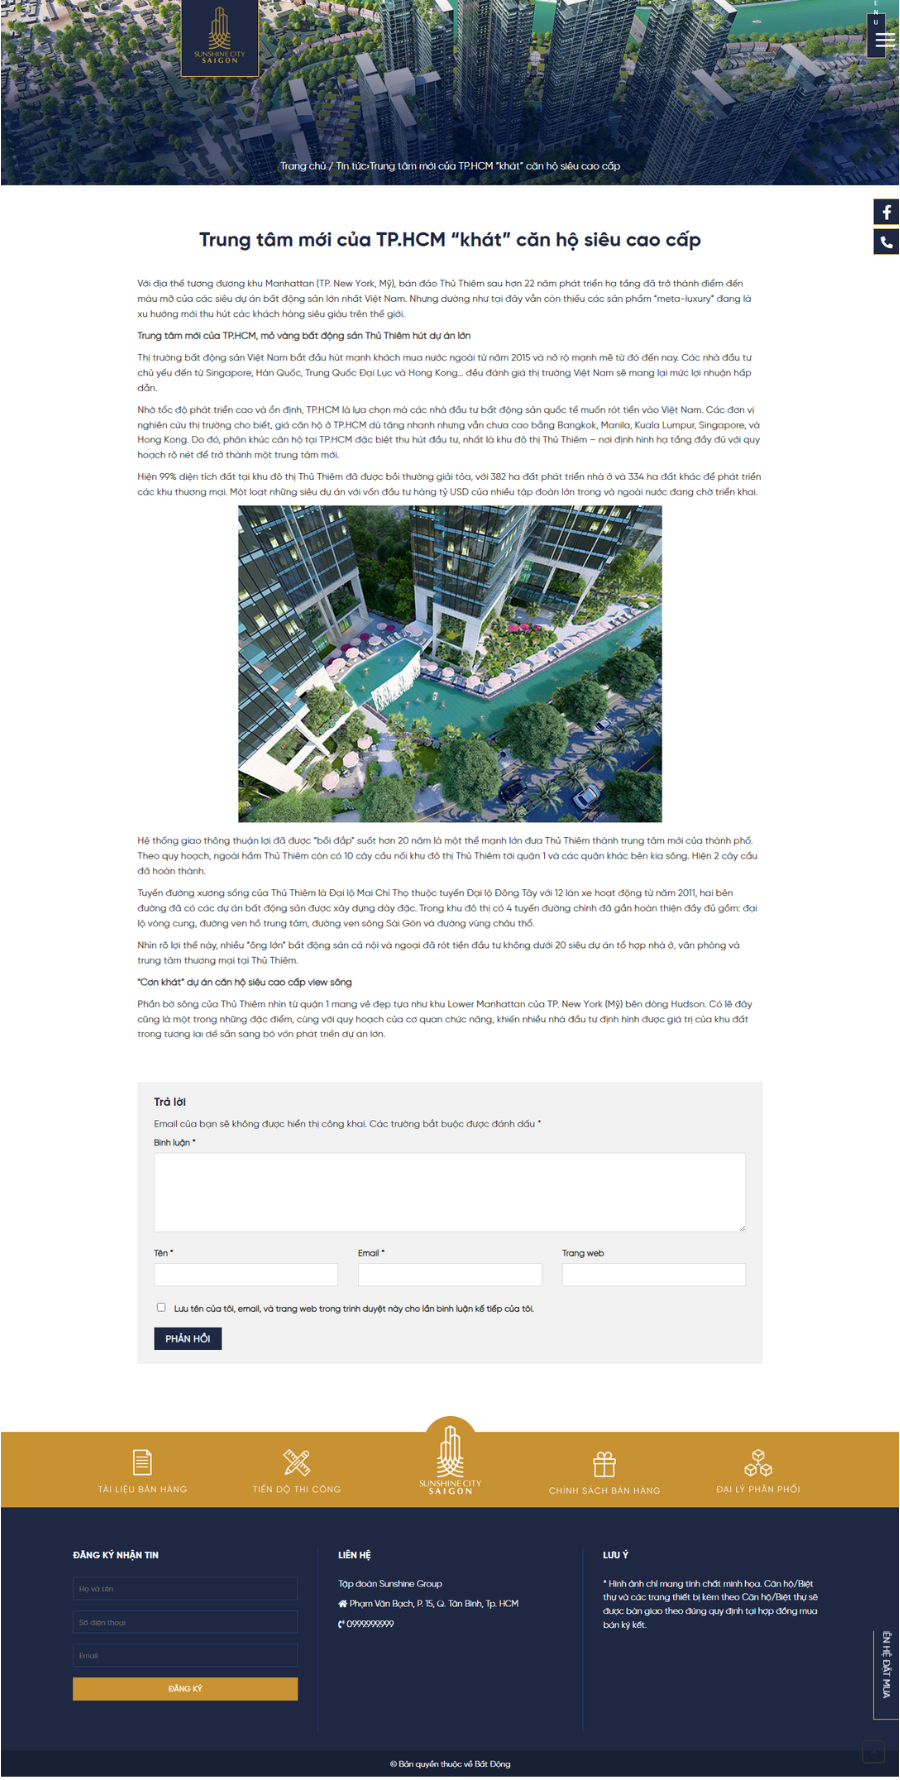 Theme WordPress Website giới thiệu về dự án bất động sản